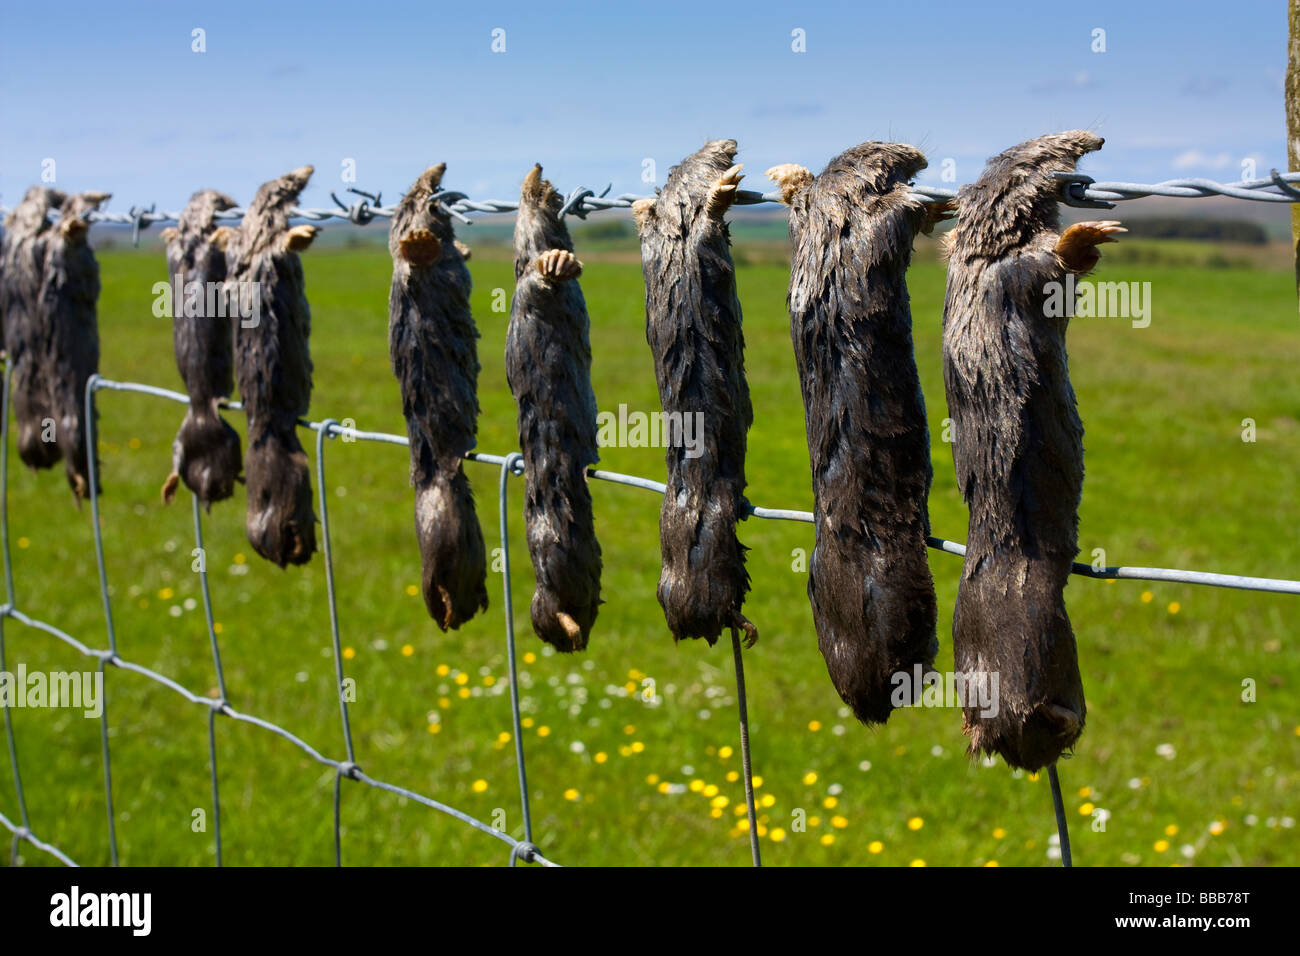 Los Topos muertos atrapados por el agricultor colgando de las púas de la alambrada de Northumberland rural Foto de stock